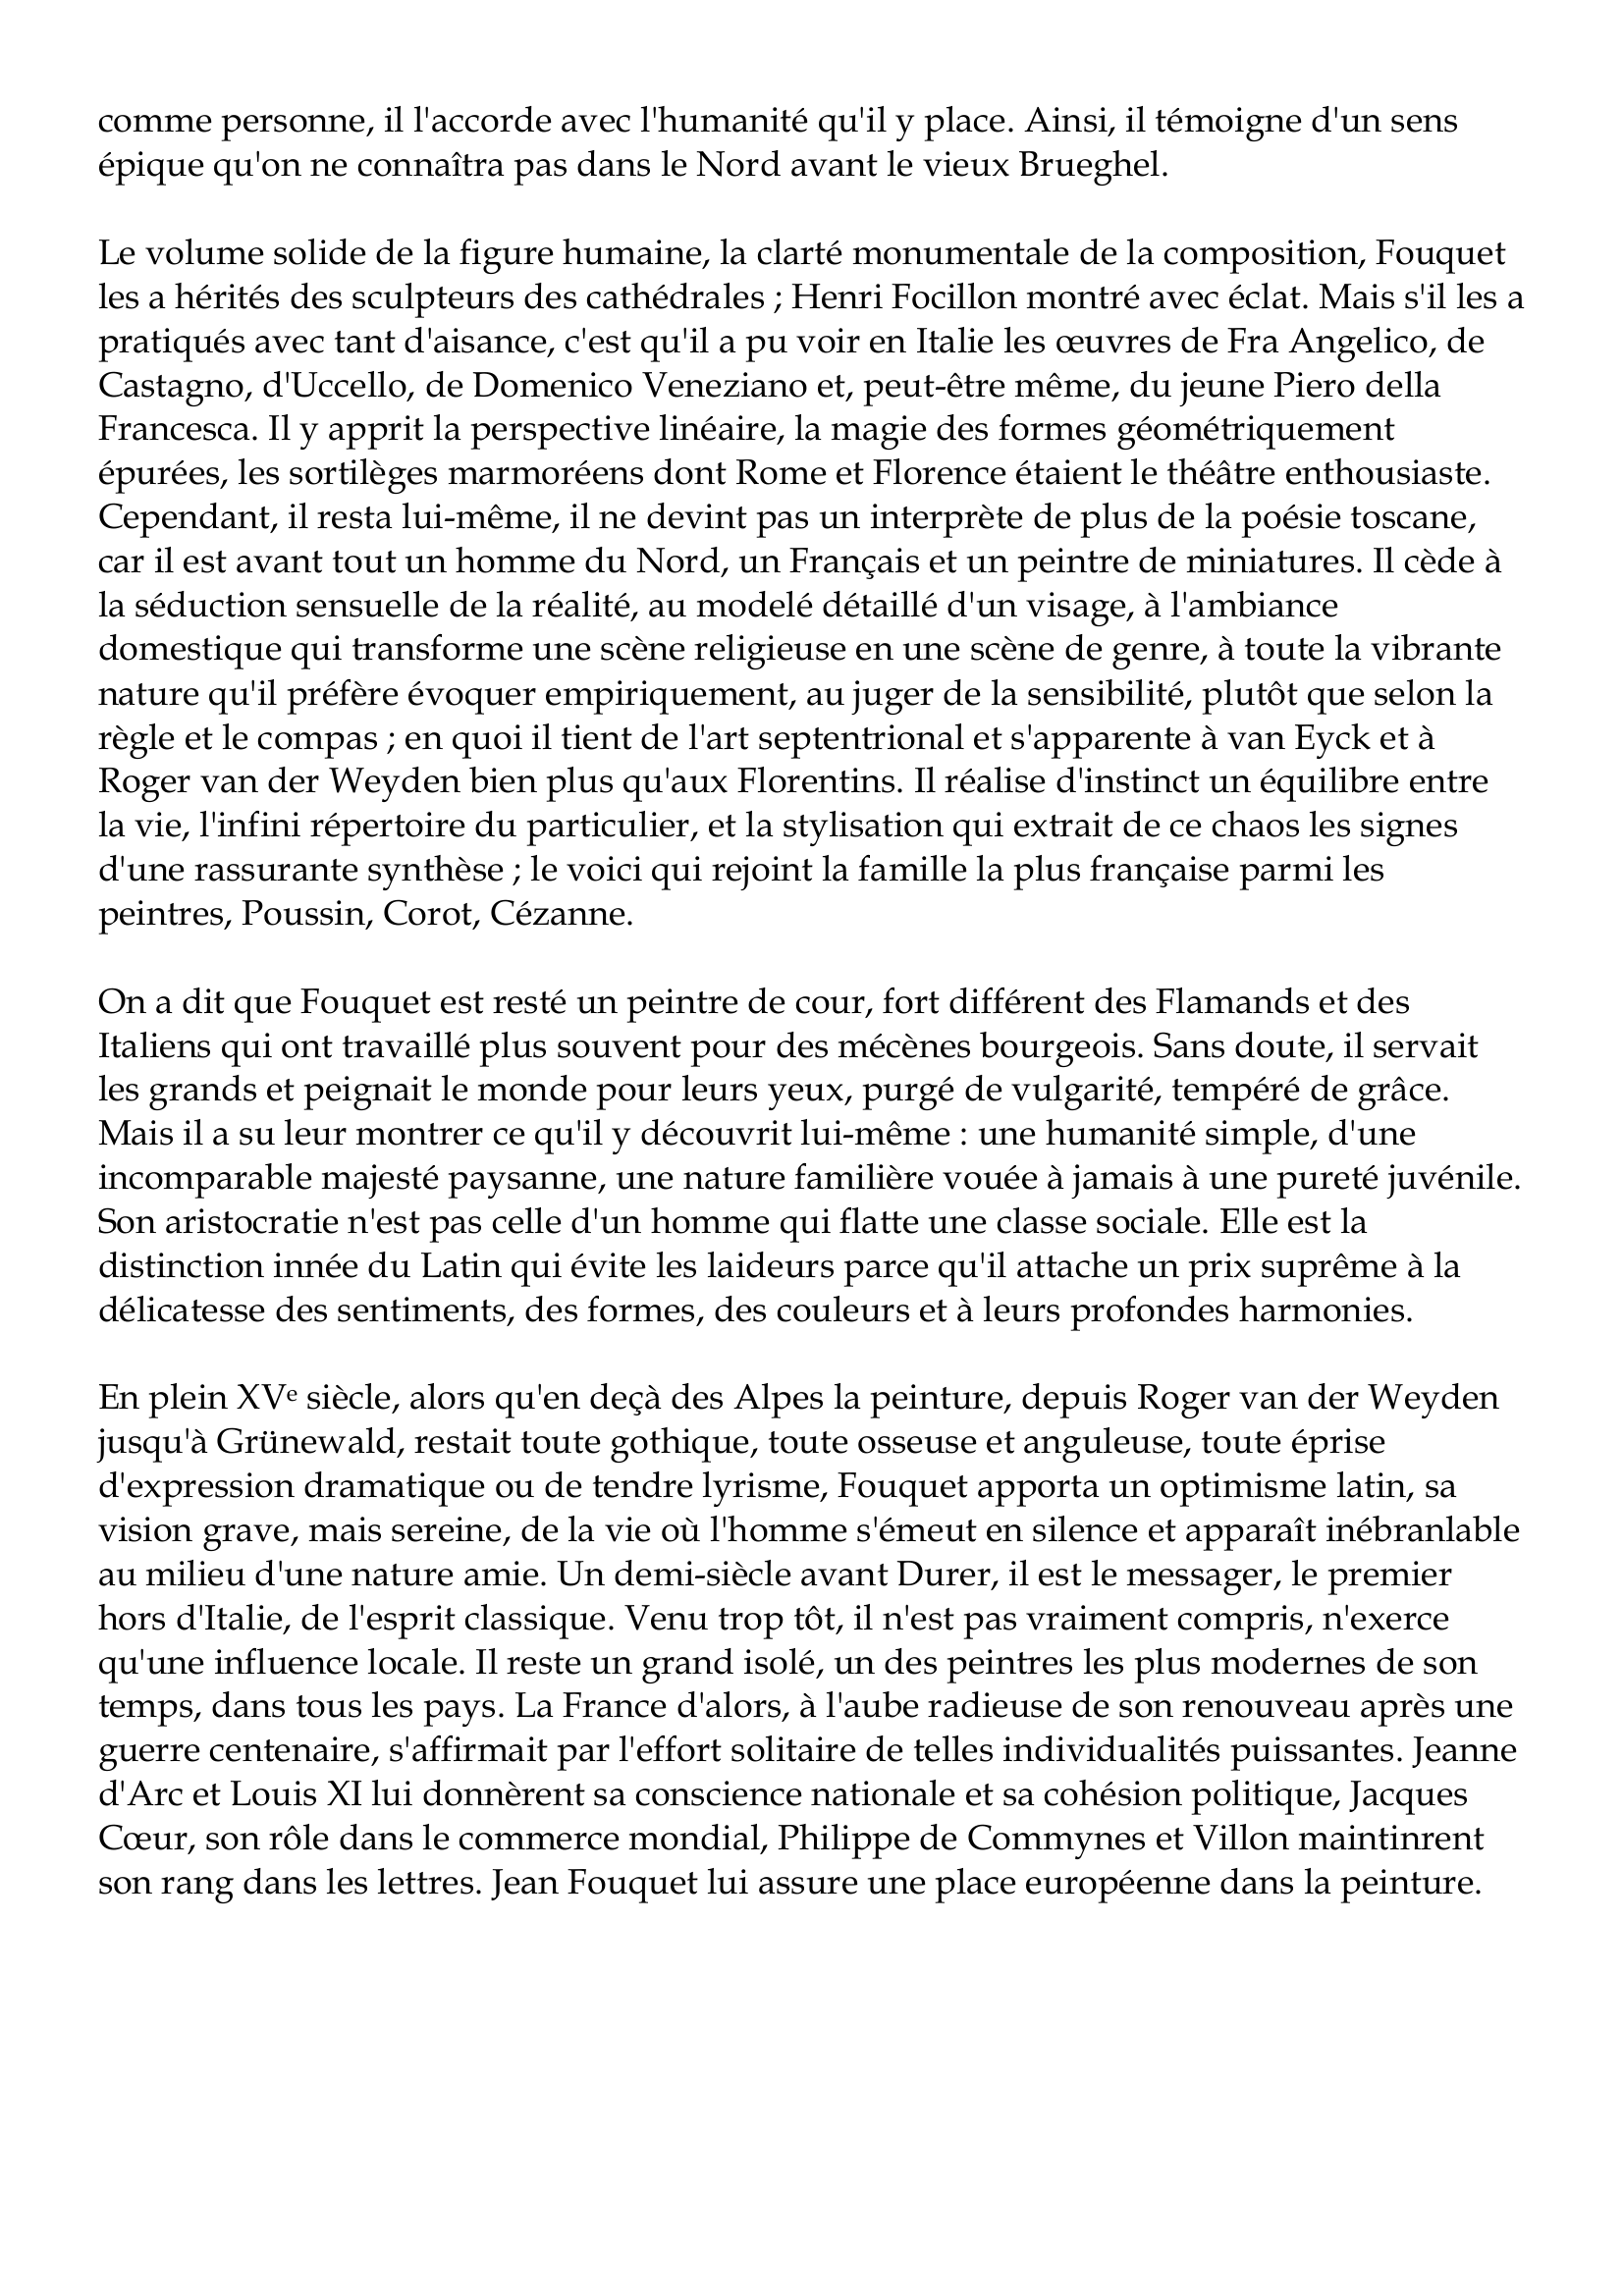 Prévisualisation du document Jean Fouquet
vers 1420-1479-80
Jean Fouquet a été le premier parmi les